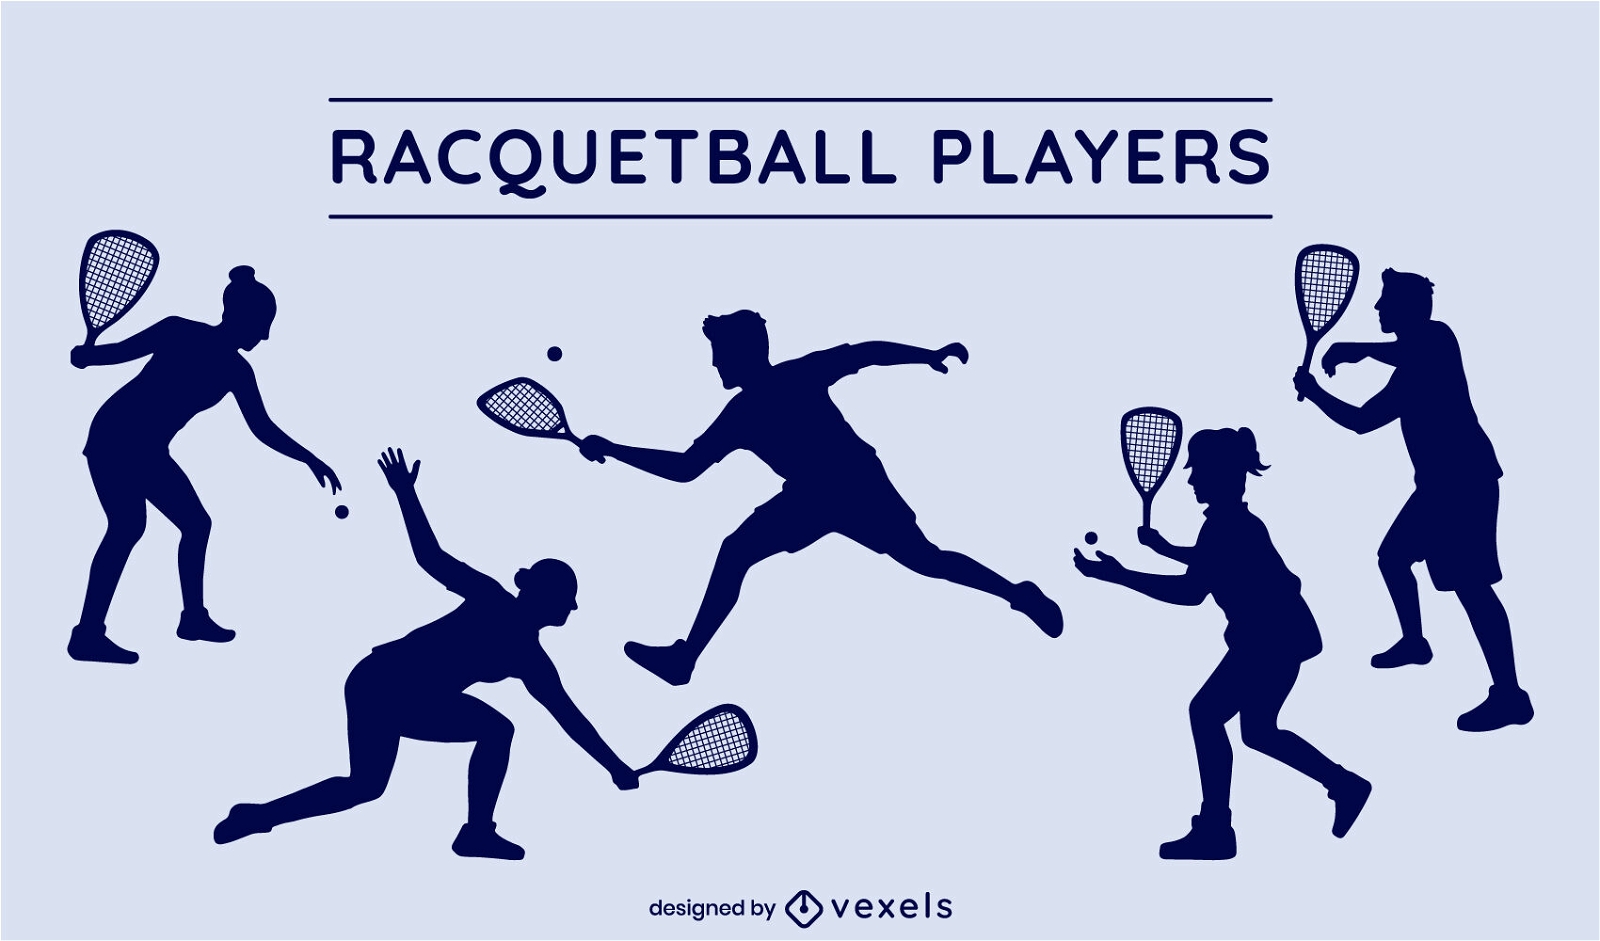 Racquetball-Spieler-Silhouetten gesetzt